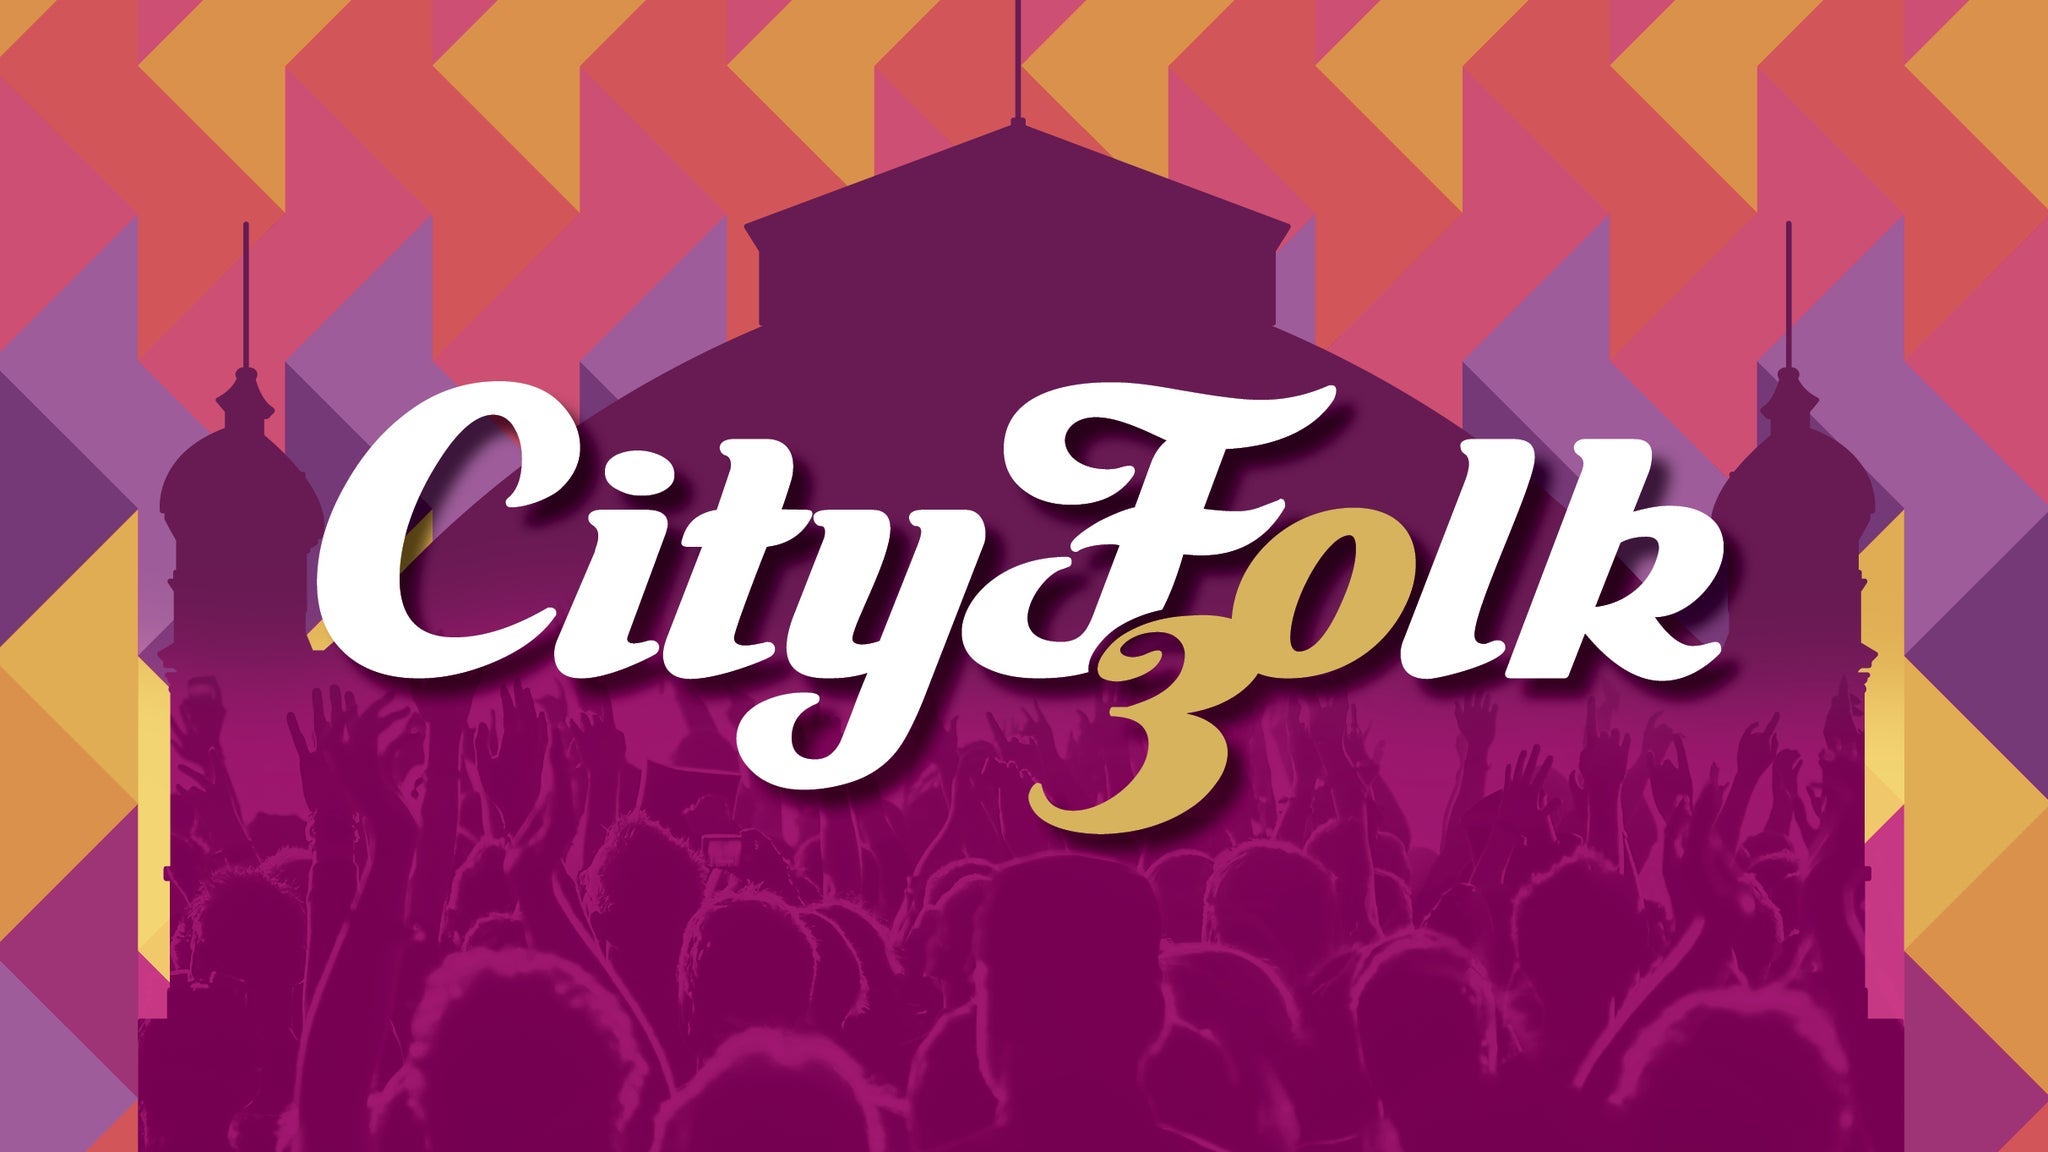 CityFolk Festival